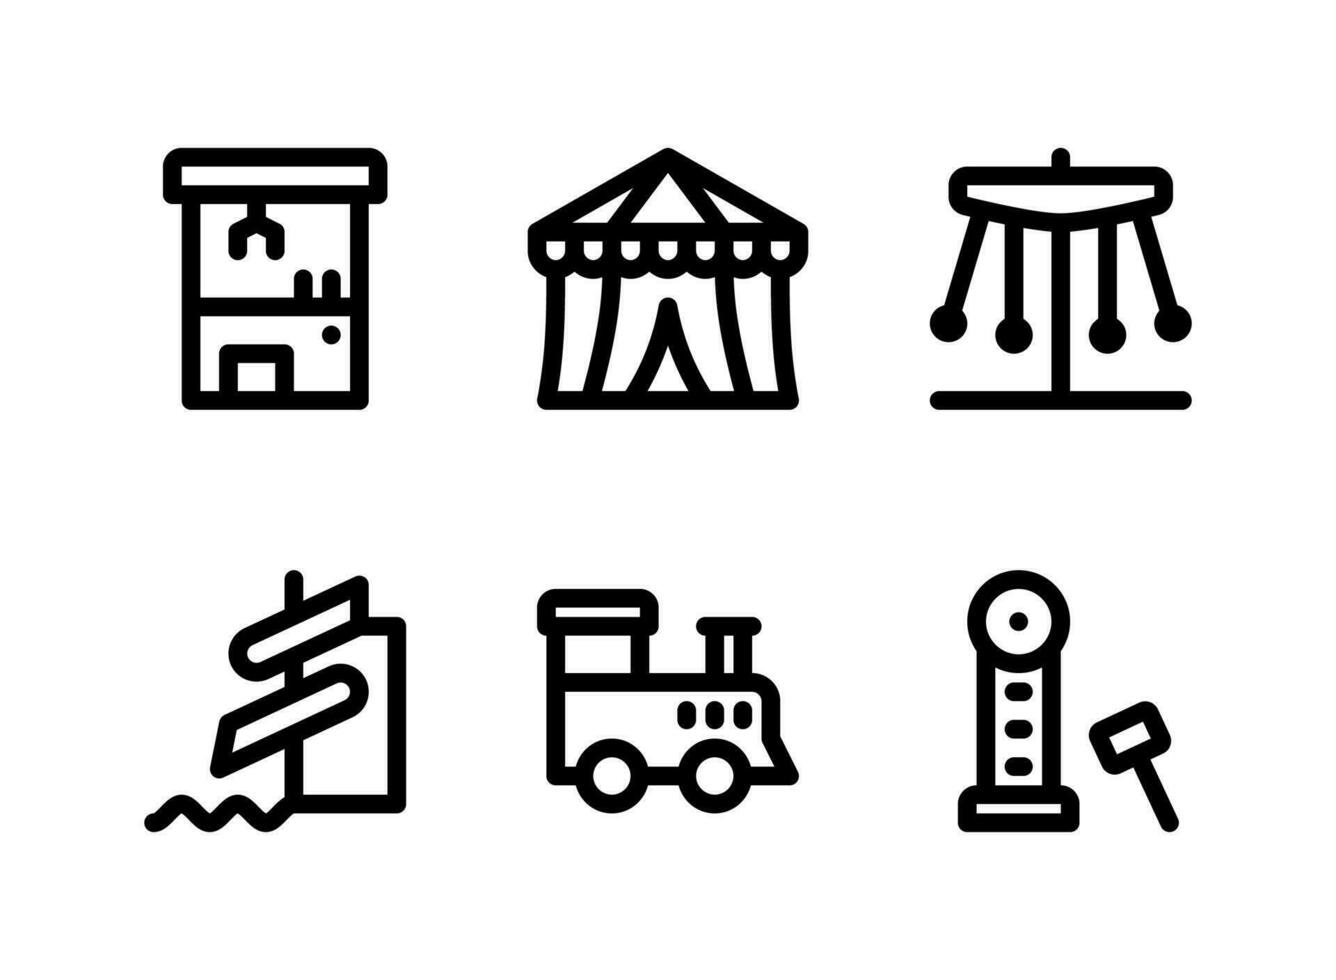 semplice set di icone di linea del vettore relative al parco giochi. contiene icone come artigli, tendone da circo, carnevale, parco acquatico e altro ancora.